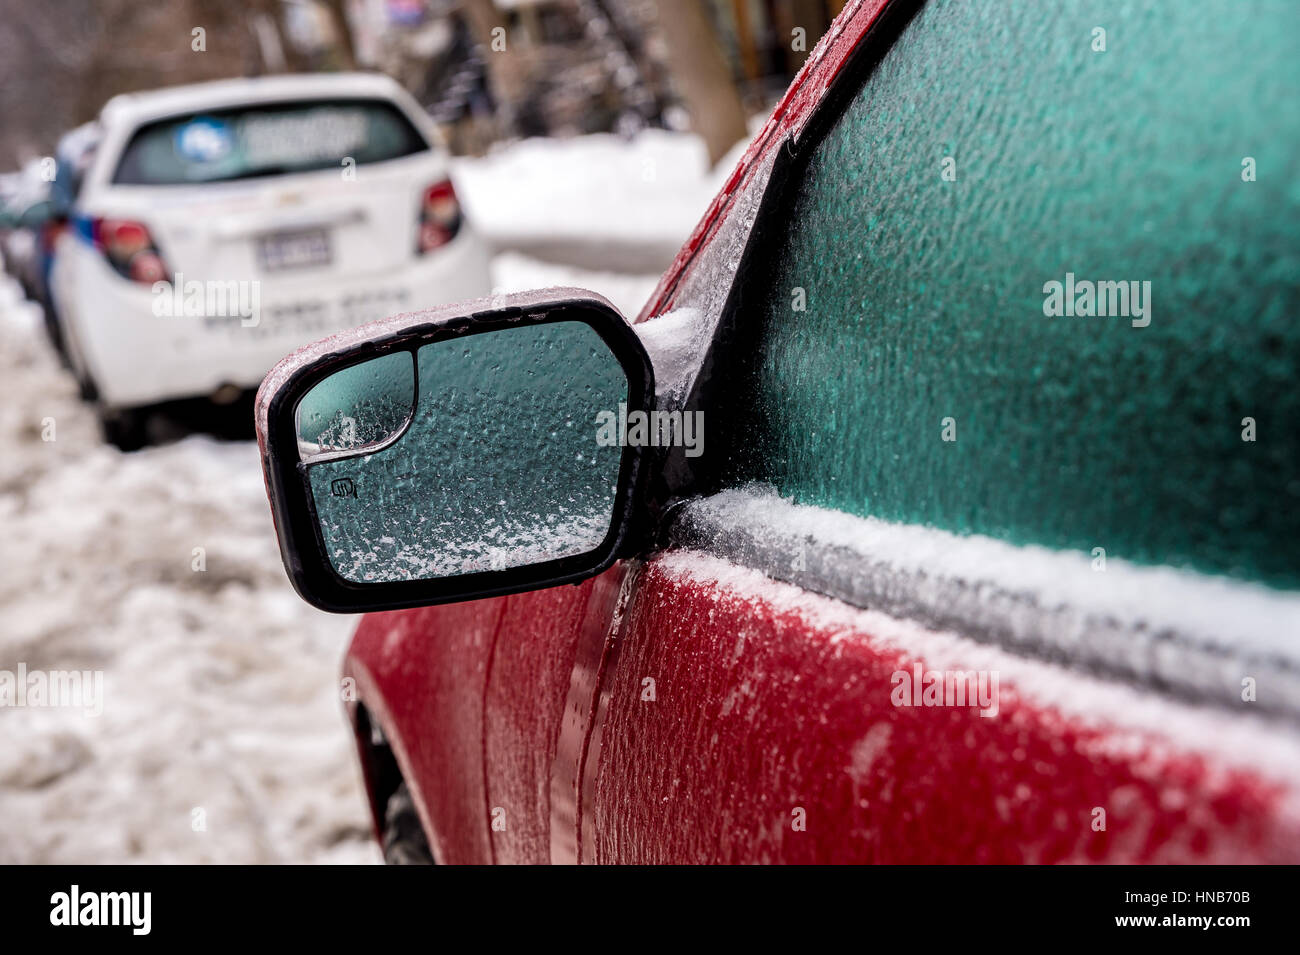 Montreal, CA, 29. Februar 2016. Autospiegel und Fenster sind mit Eis bedeckt, nach Gefrierender Regen. Stockfoto